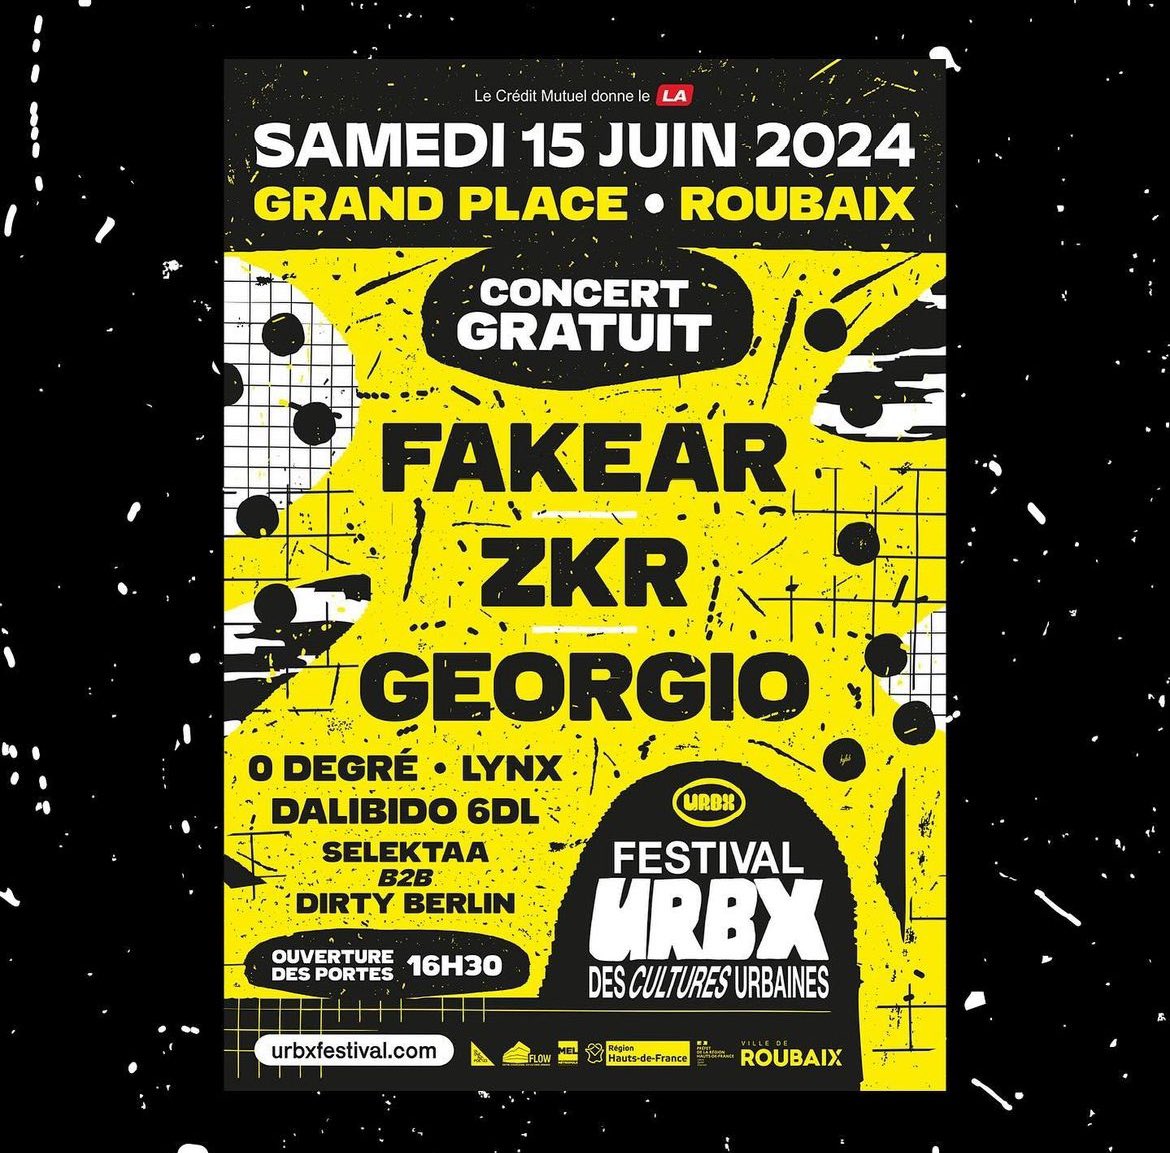 L’URBX Festival dévoile la line up de son concert gratuit ! 🔥 On retrouvera @zkrmusik ; @Georgioxv3 & @Fakearmusic en tête d’affiche. 📍: Roubaix 📆: 15 juin